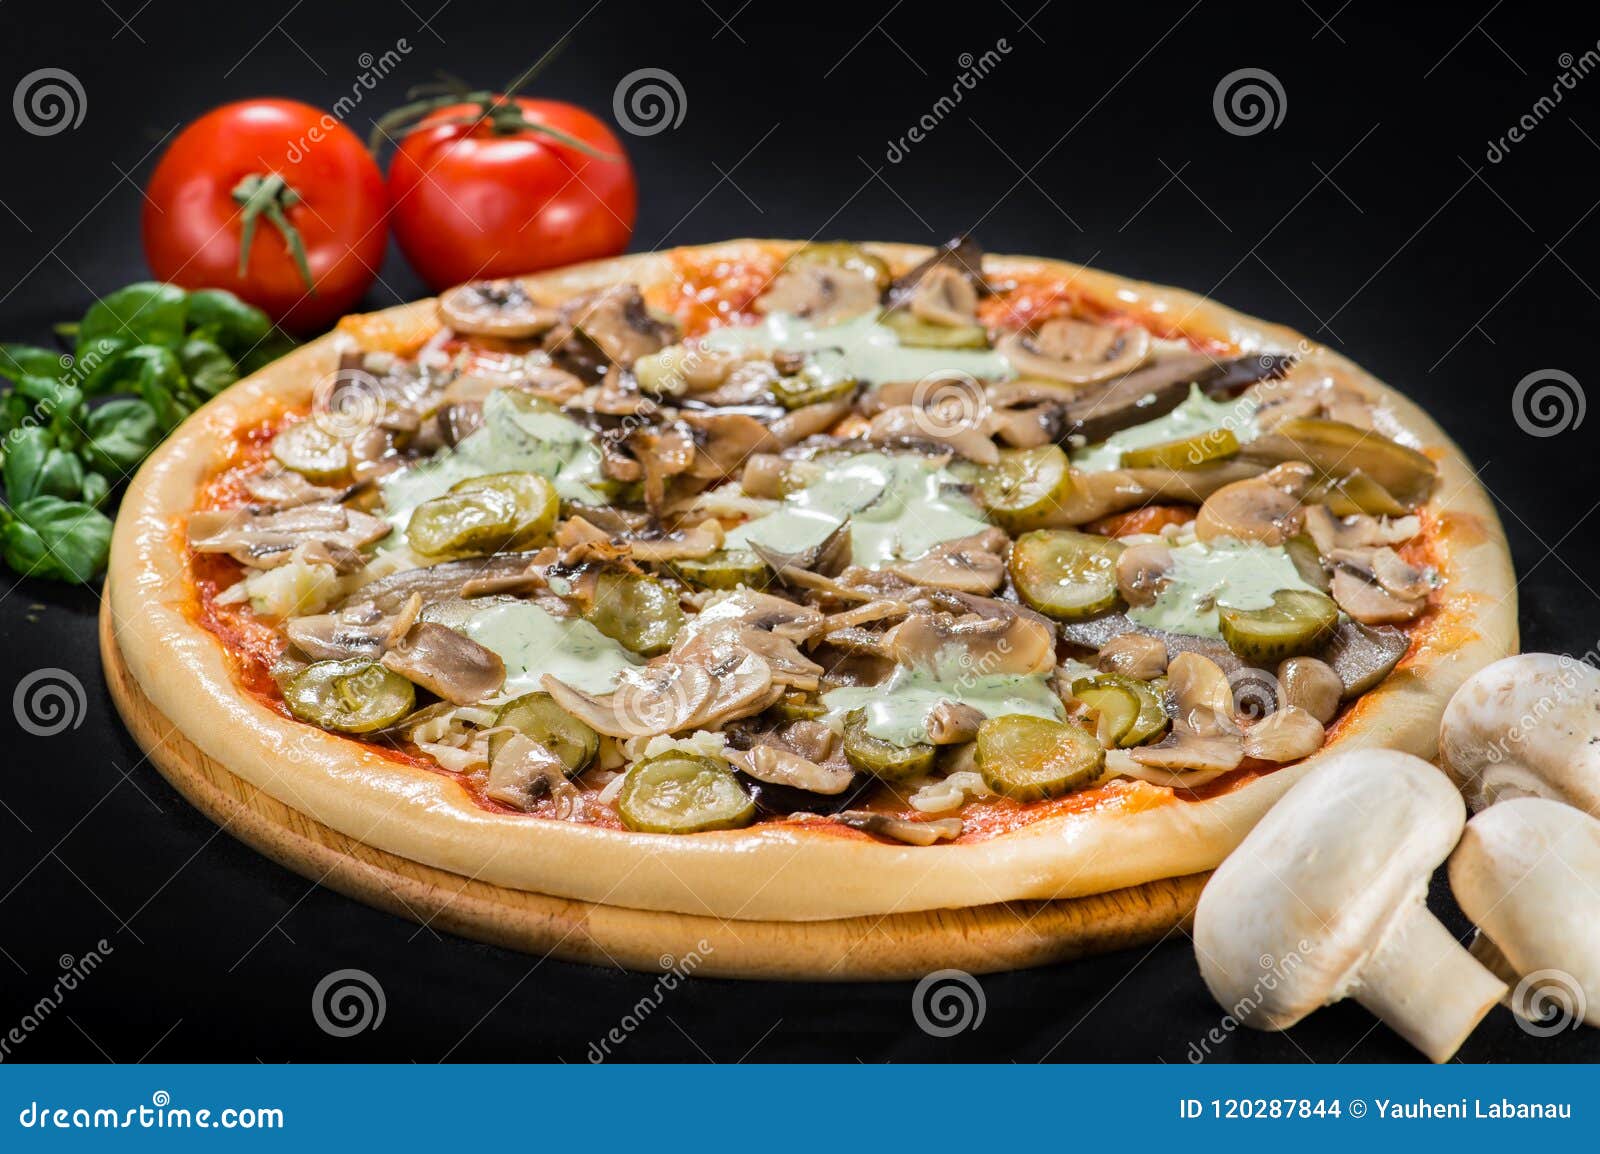 грибная пицца с маринованными грибами фото 10